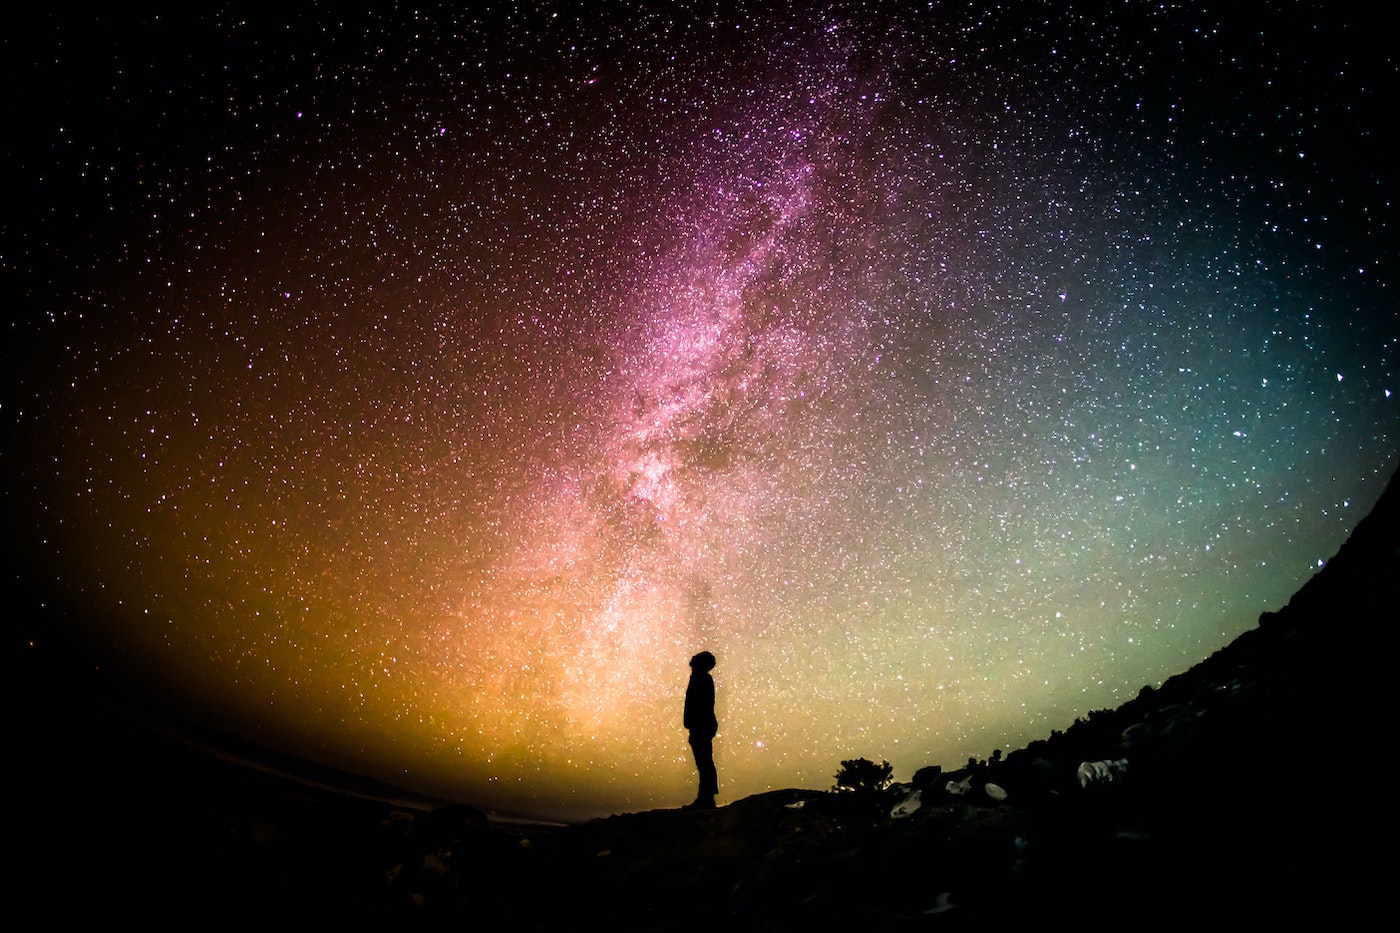 Sterren kijken voor beginners: Welke sterren aan de hemel herken jij? |  WeAreTravellers